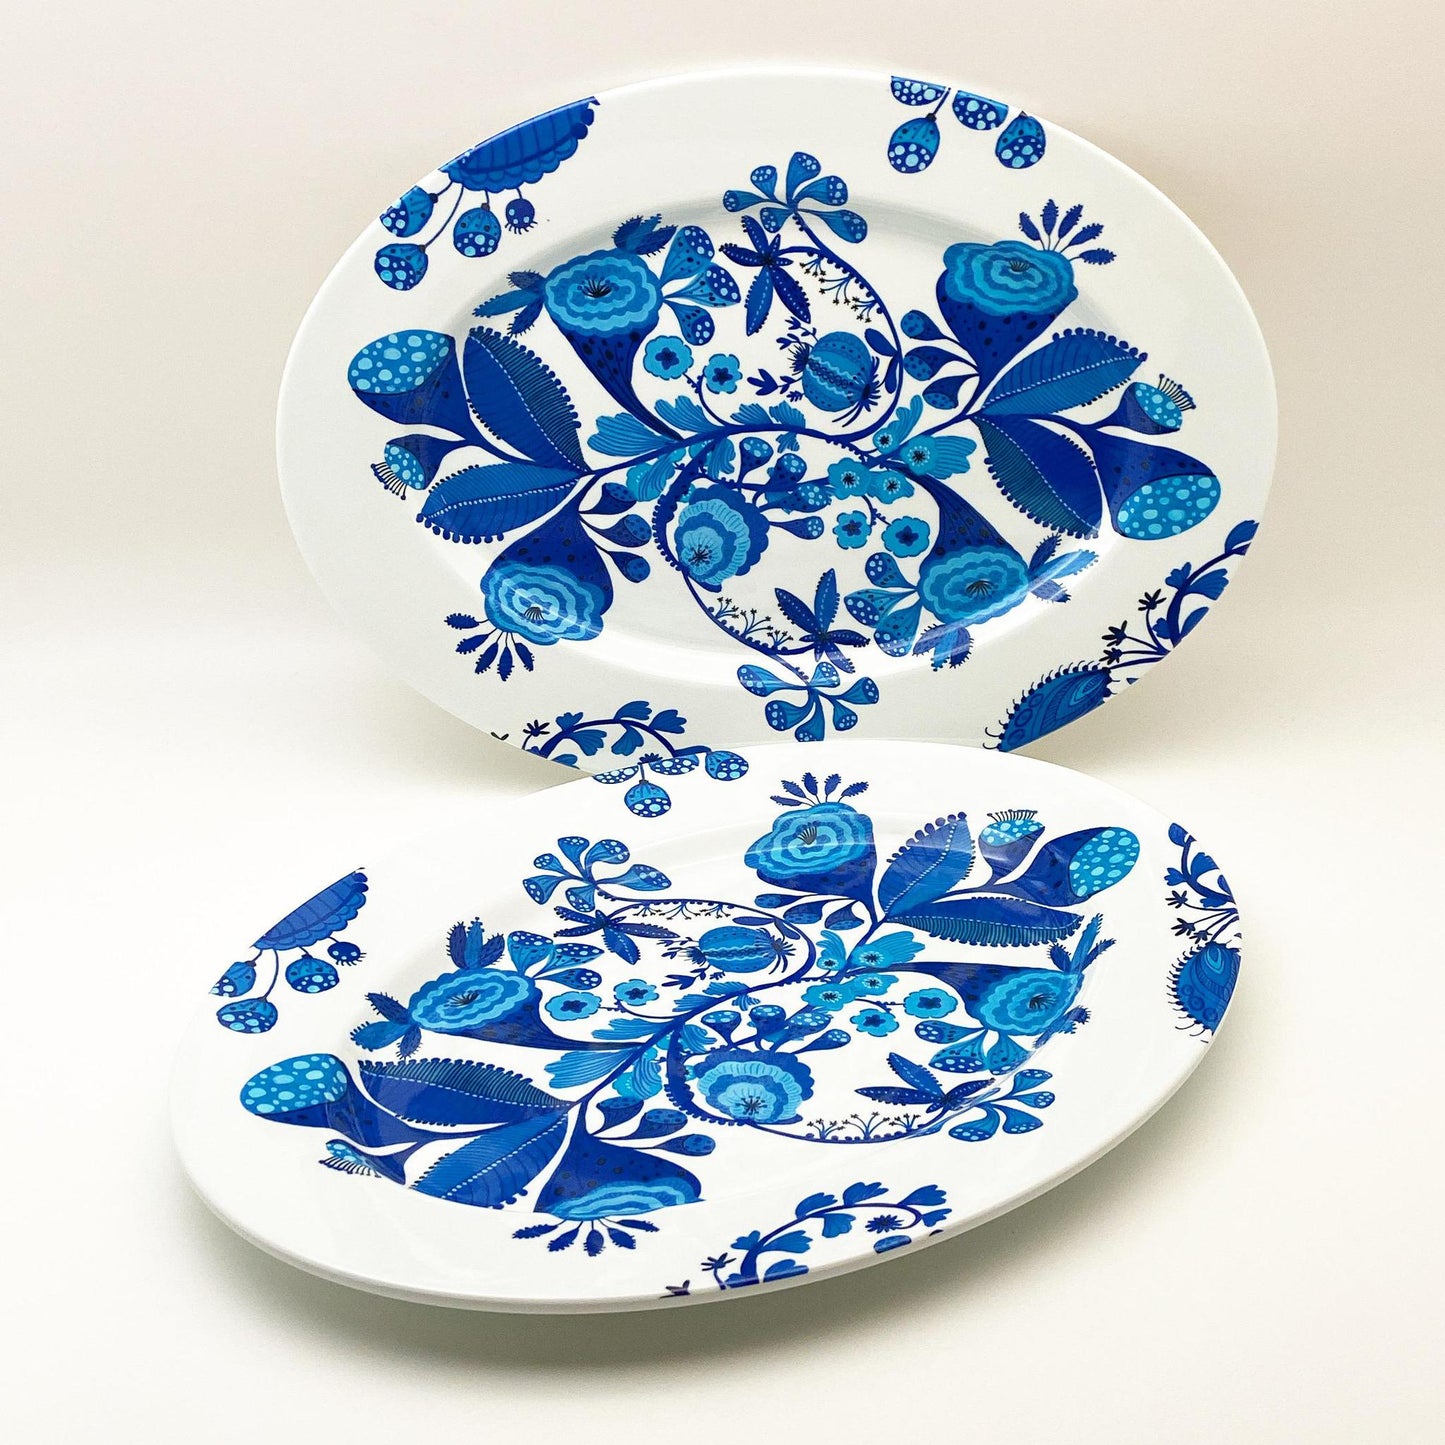 Platter - Melamine "Enamelware" - Blue Floral